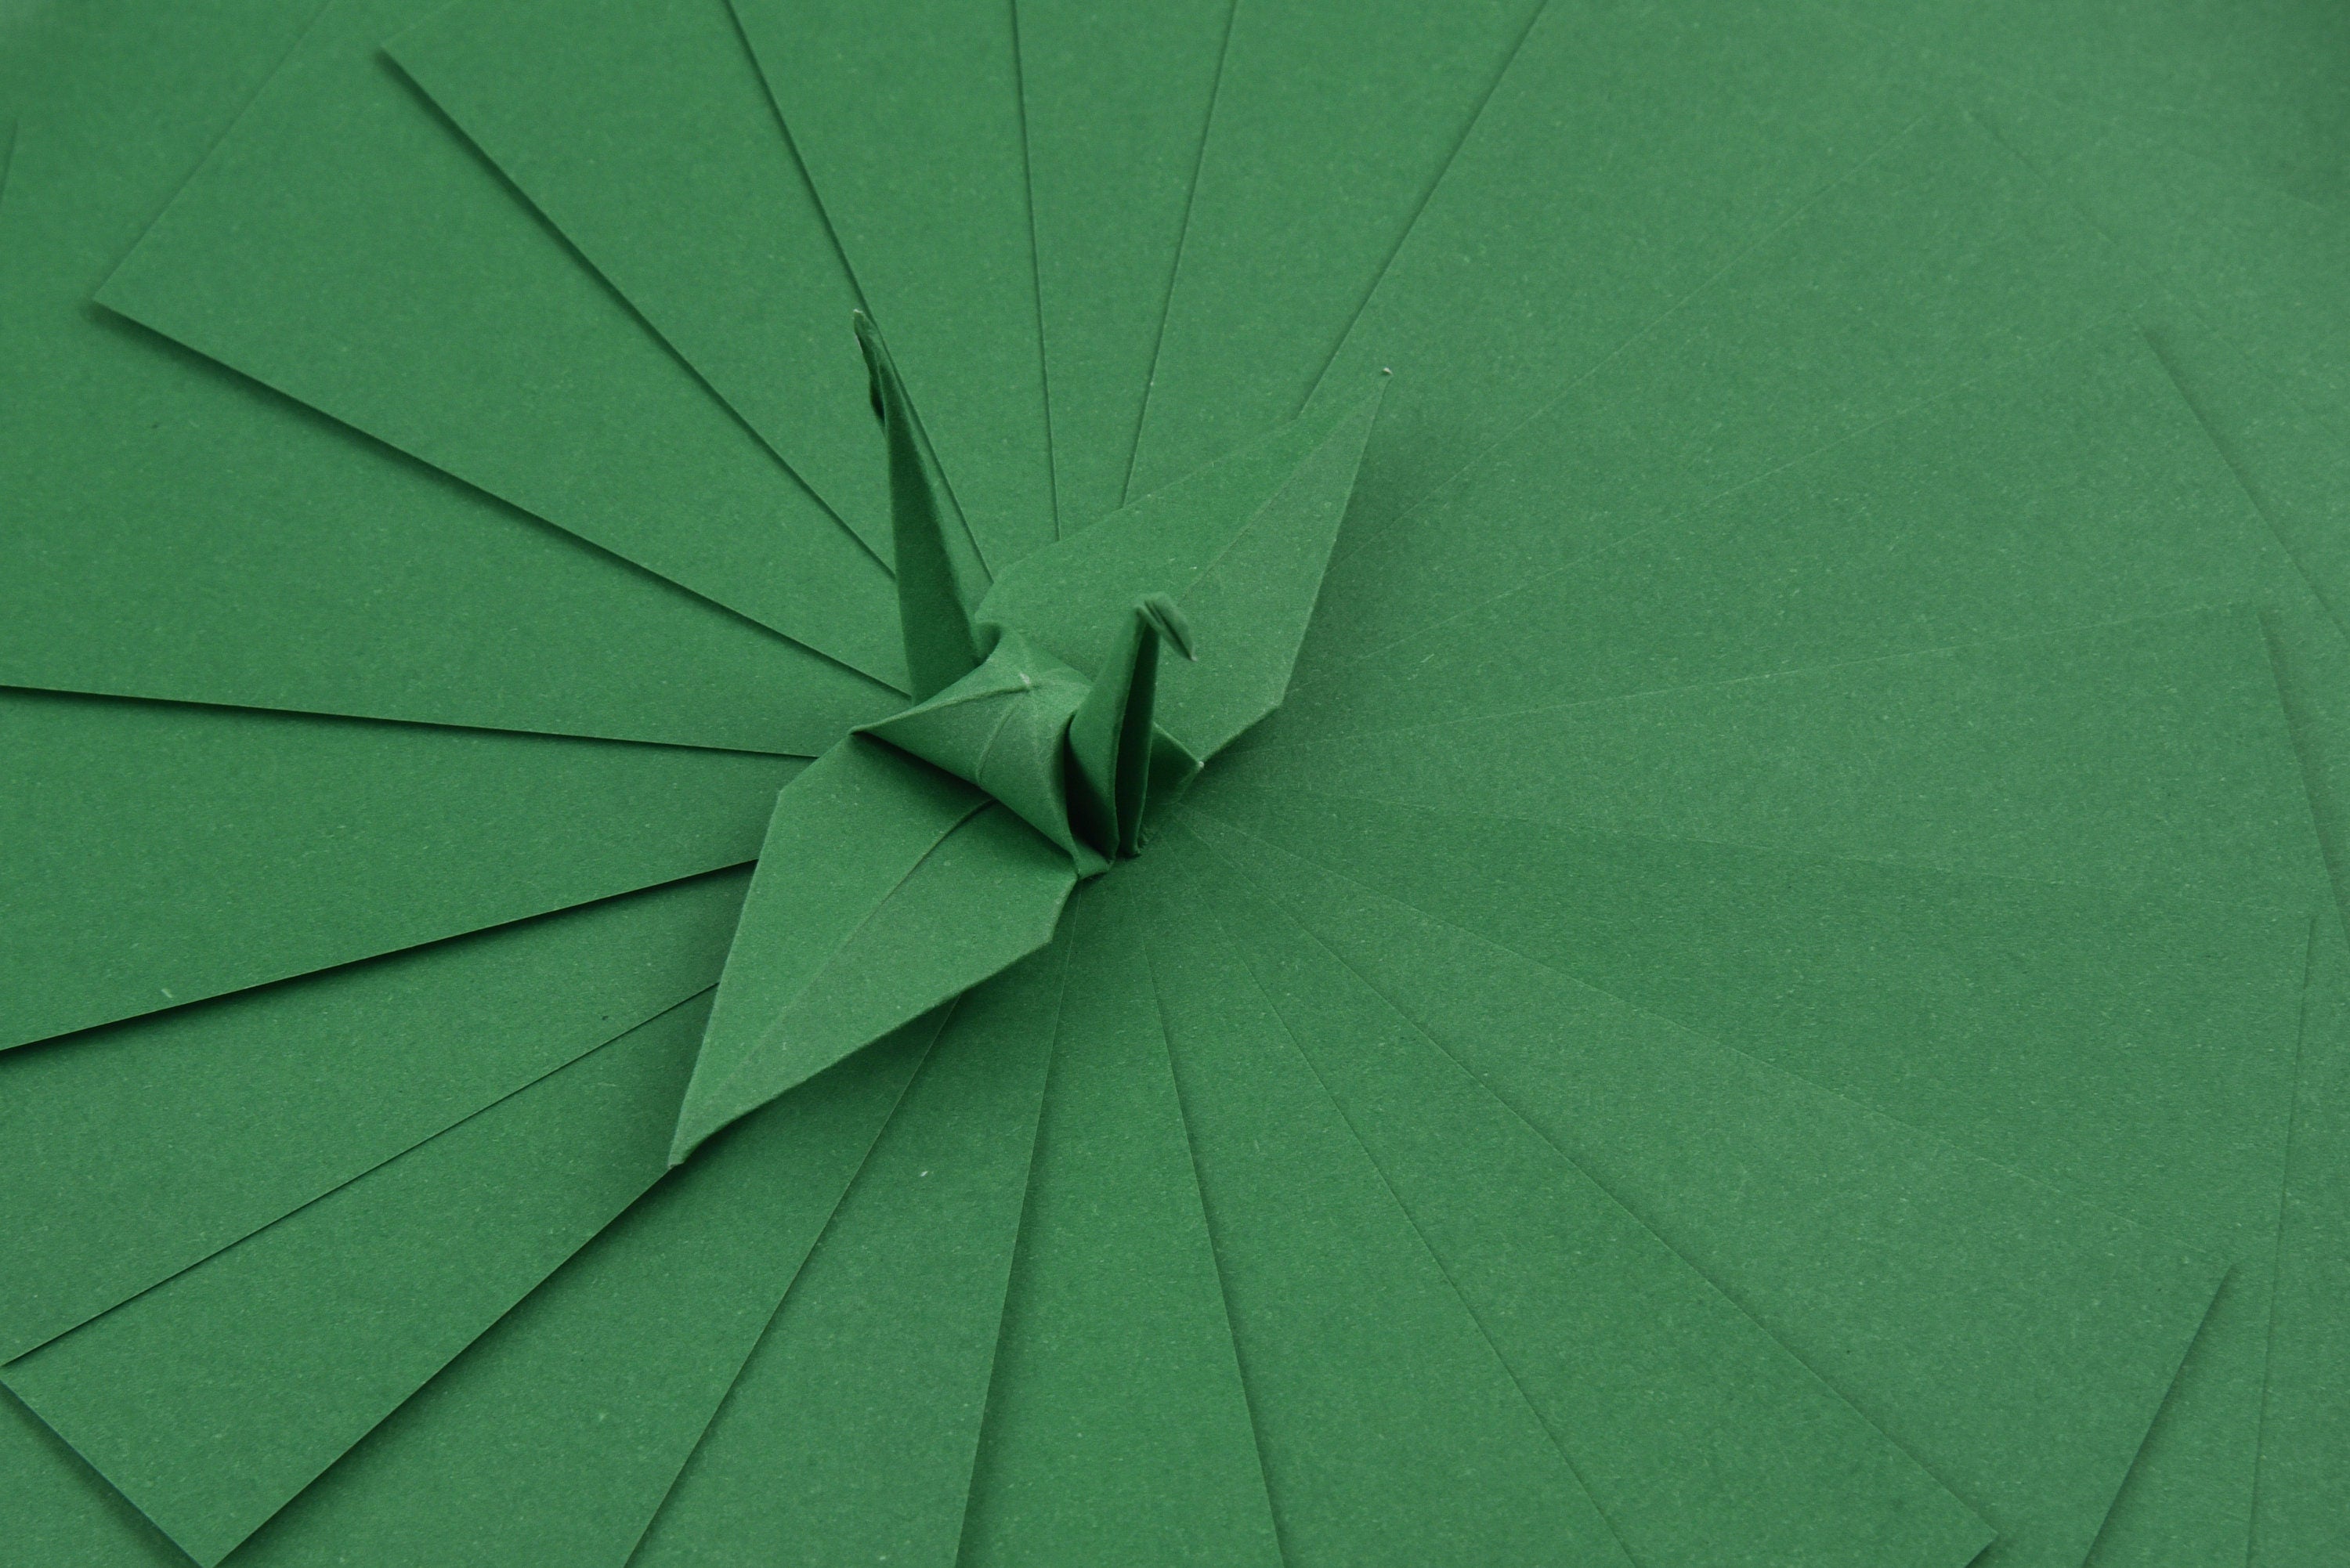 100 hojas de papel GreenOrigami - 3x3 pulgadas - Paquete de papel cuadrado para plegado, grullas de origami y decoración - S24